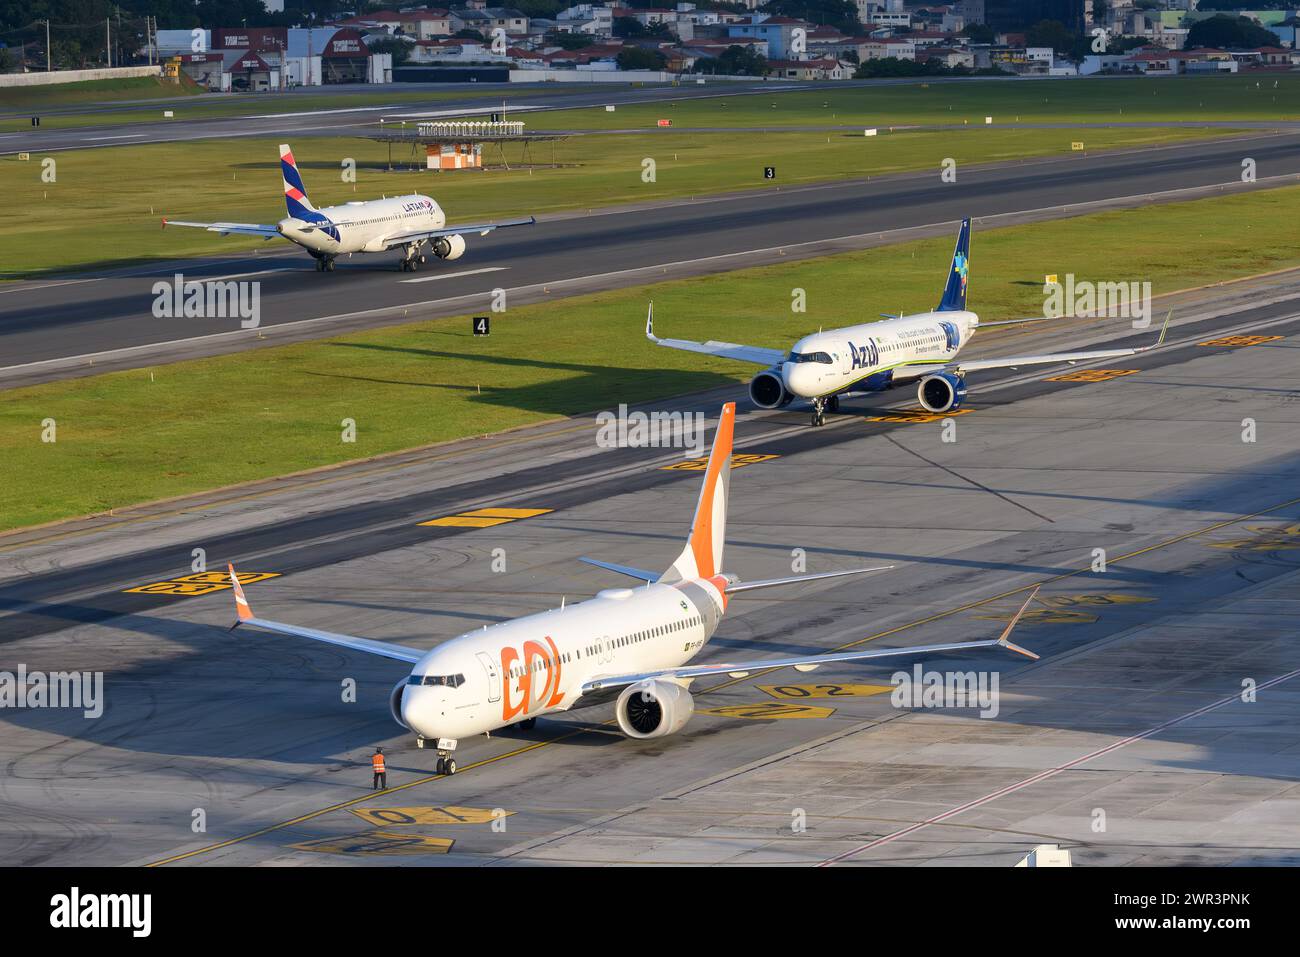 Gol, Azul und LATAM Airlines, die drei größten Fluggesellschaften aus Brasilien am Congonhas Airport in Sao Paulo, Brasilien. Geschäftiger brasilianischer Inlandsflugmarkt. Stockfoto